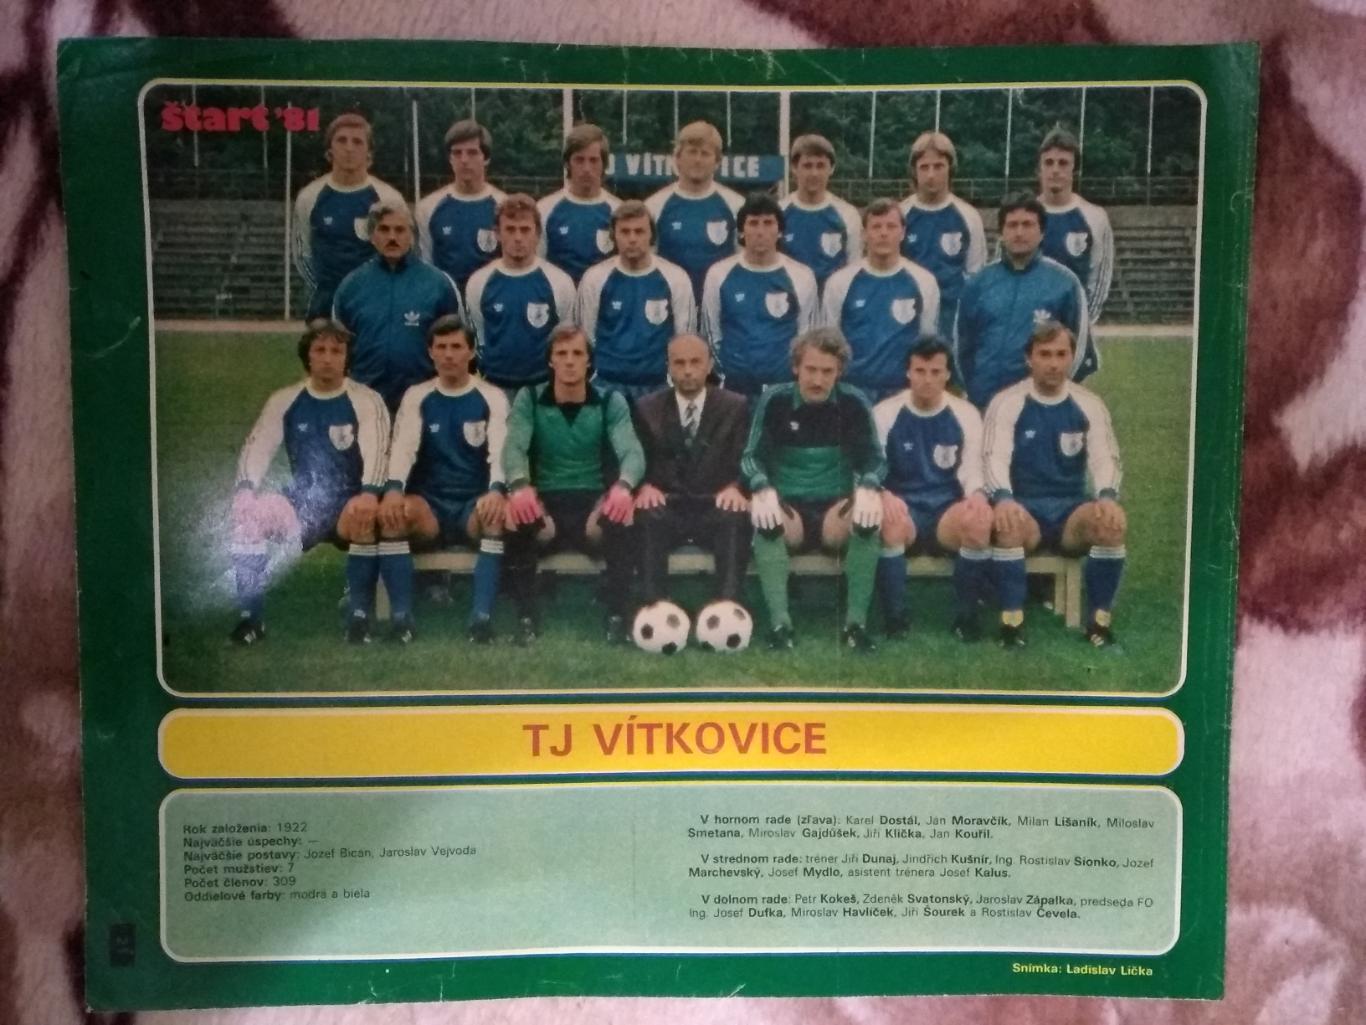 Постер.Футбол.Витковице (ЧССР).Старт 1981 г.